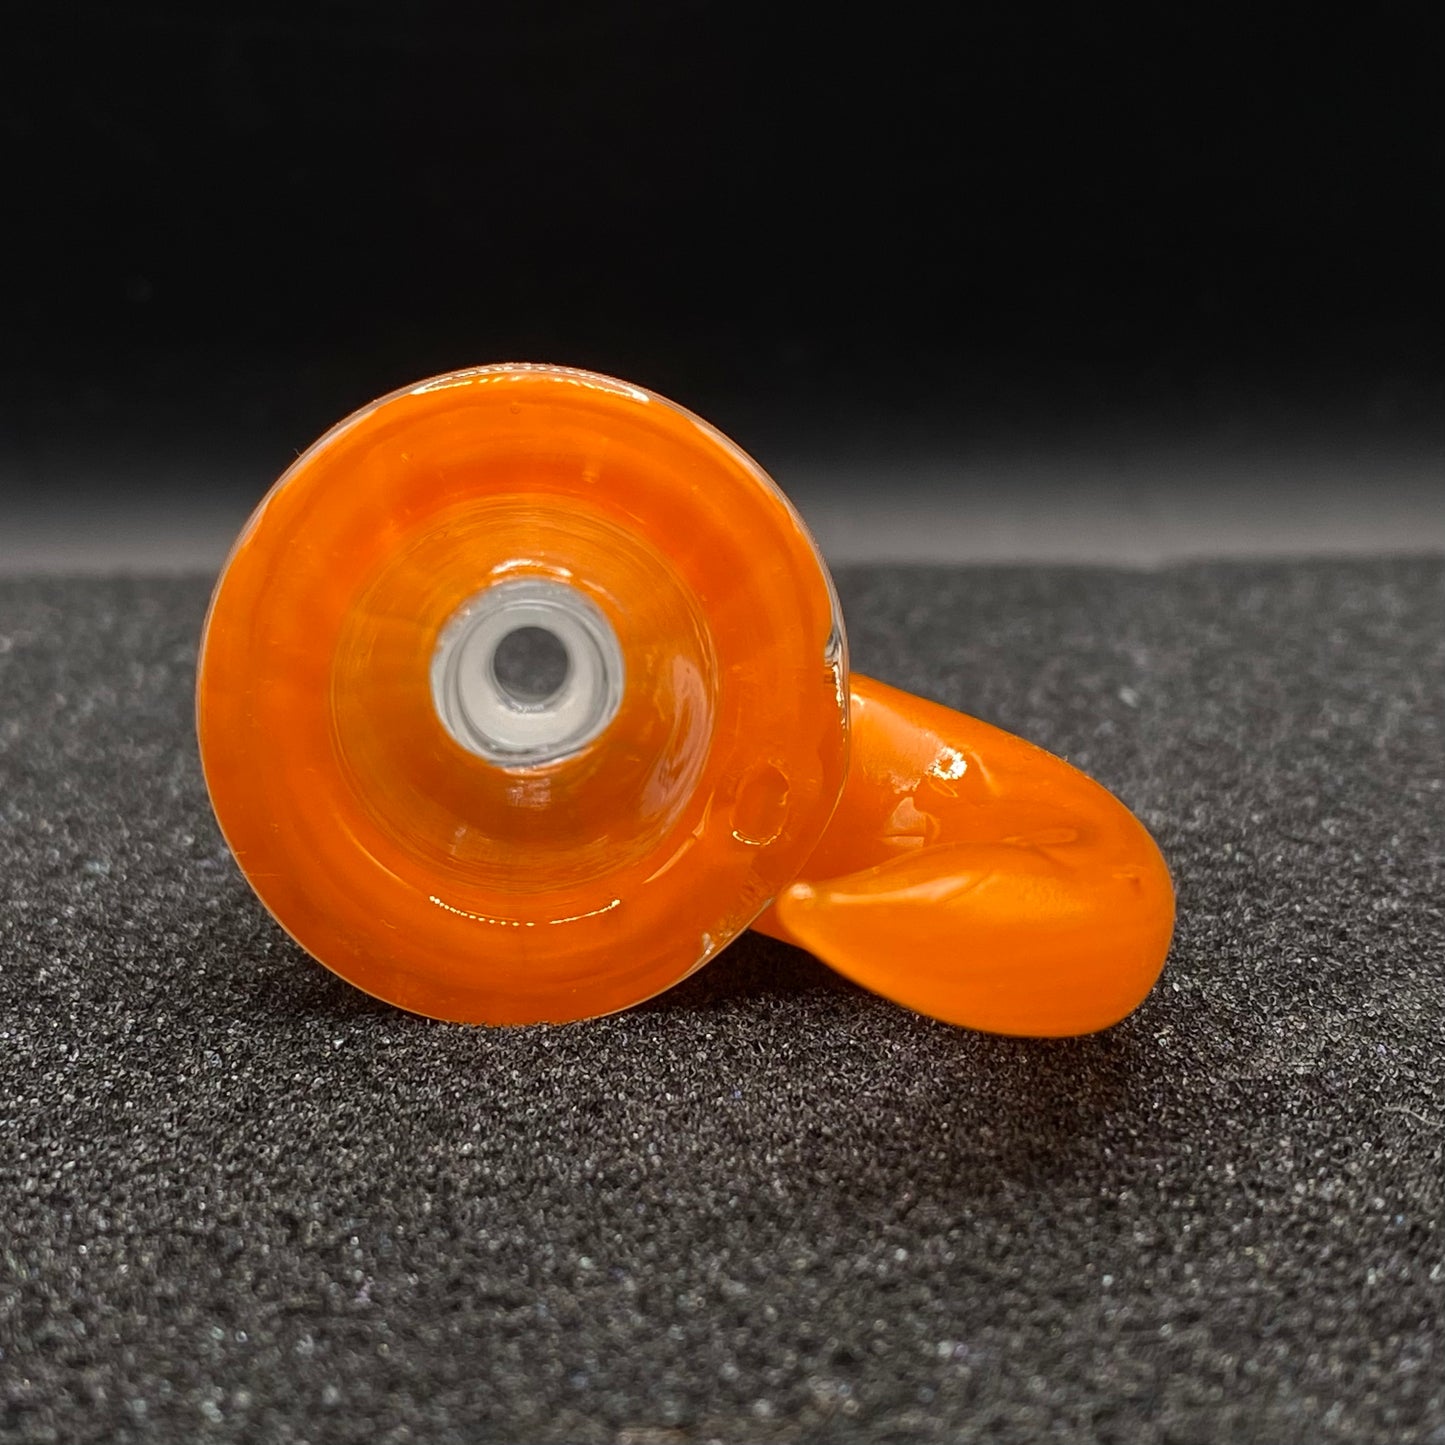 420 Glass - 18mm Single Hole Glass Bowl Slide